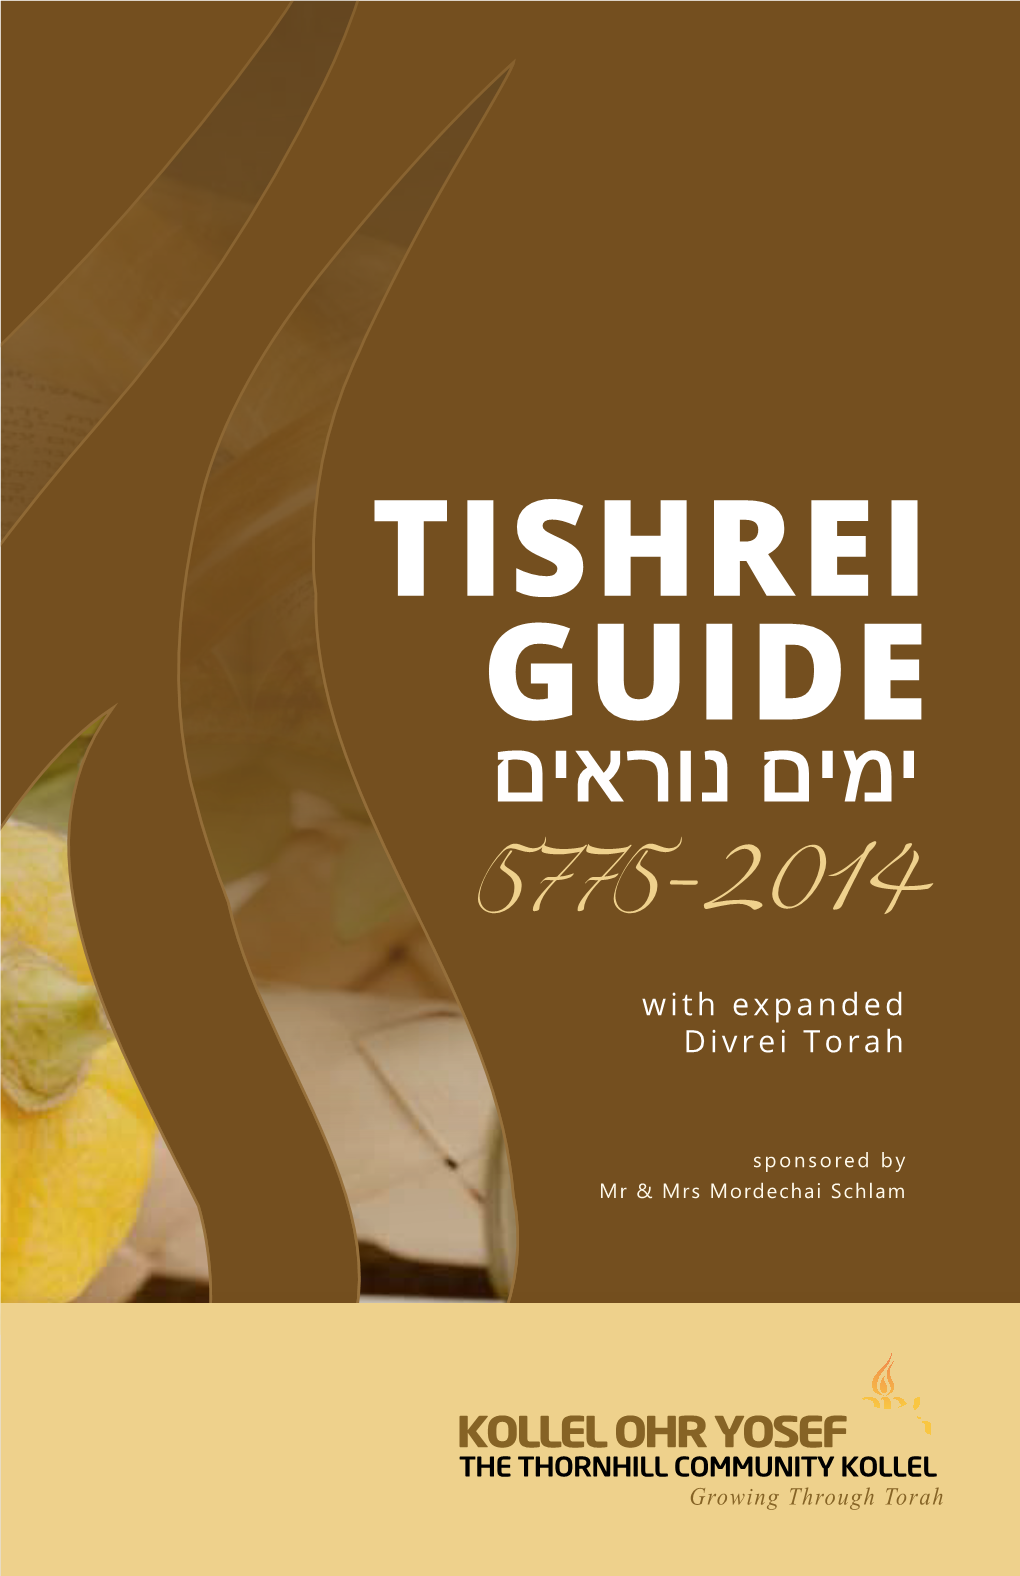 Rosh Hashanah & Yom Kippur Schedules